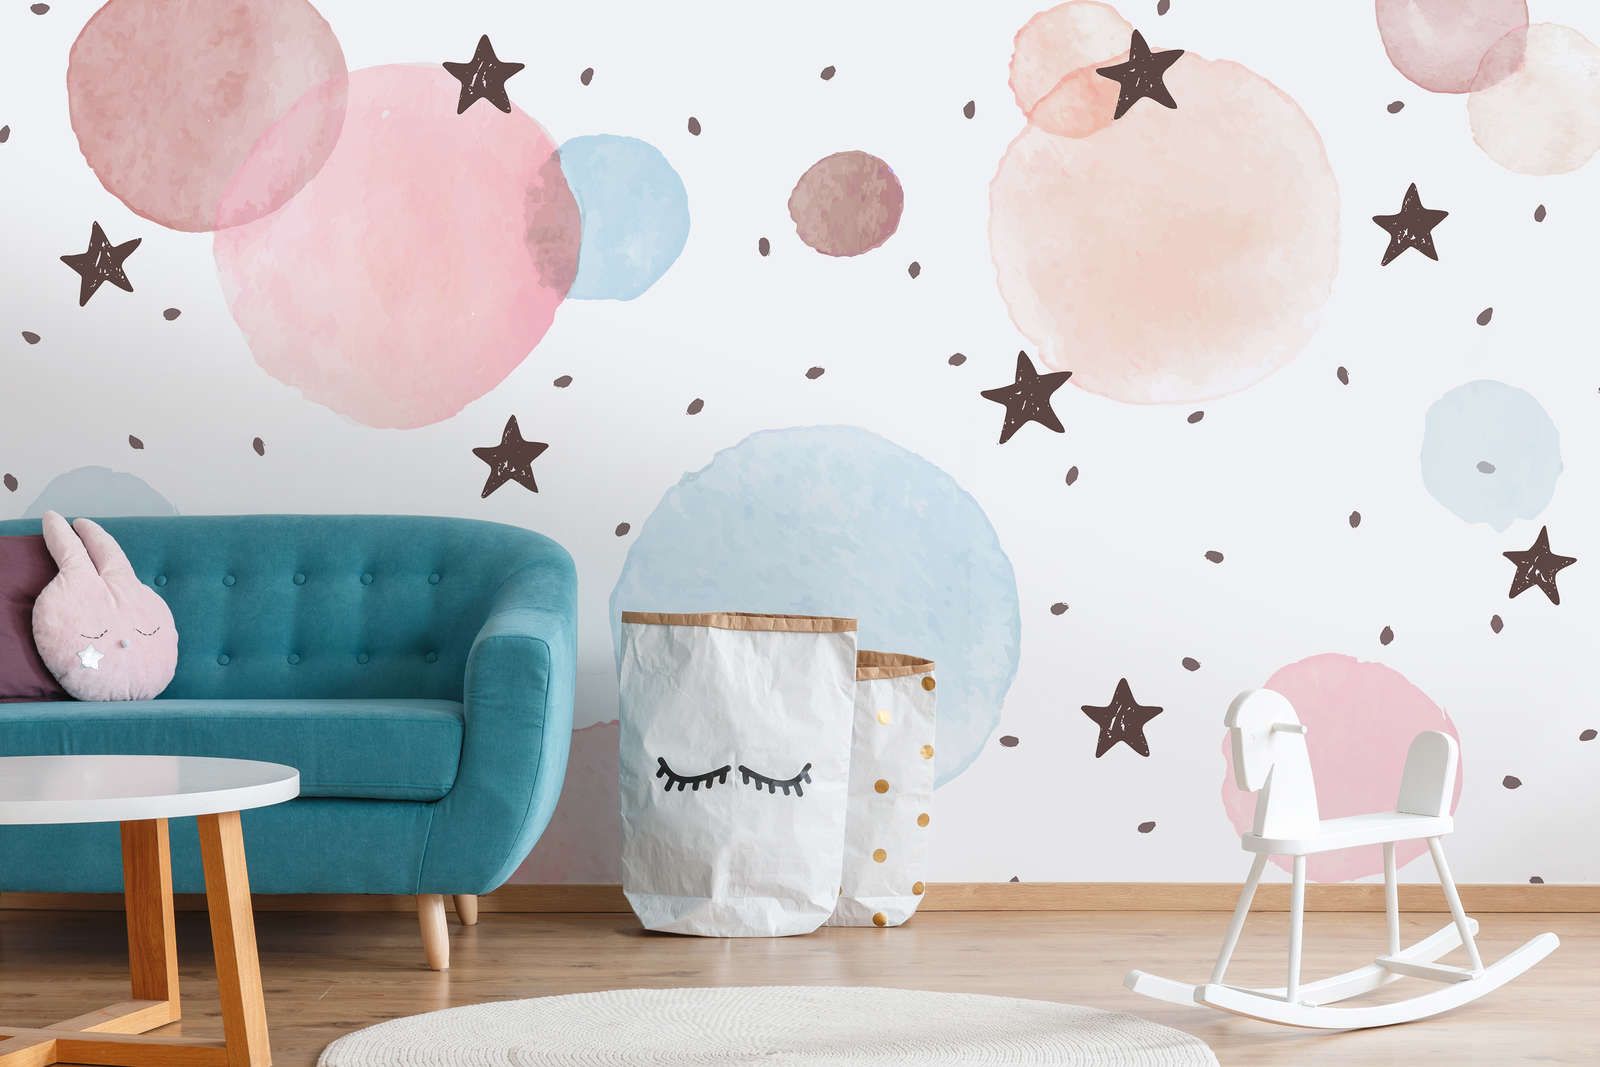             Fototapete fürs Kinderzimmer mit Sternen, Punkten und Kreisen – Glattes & leicht glänzendes Vlies
        